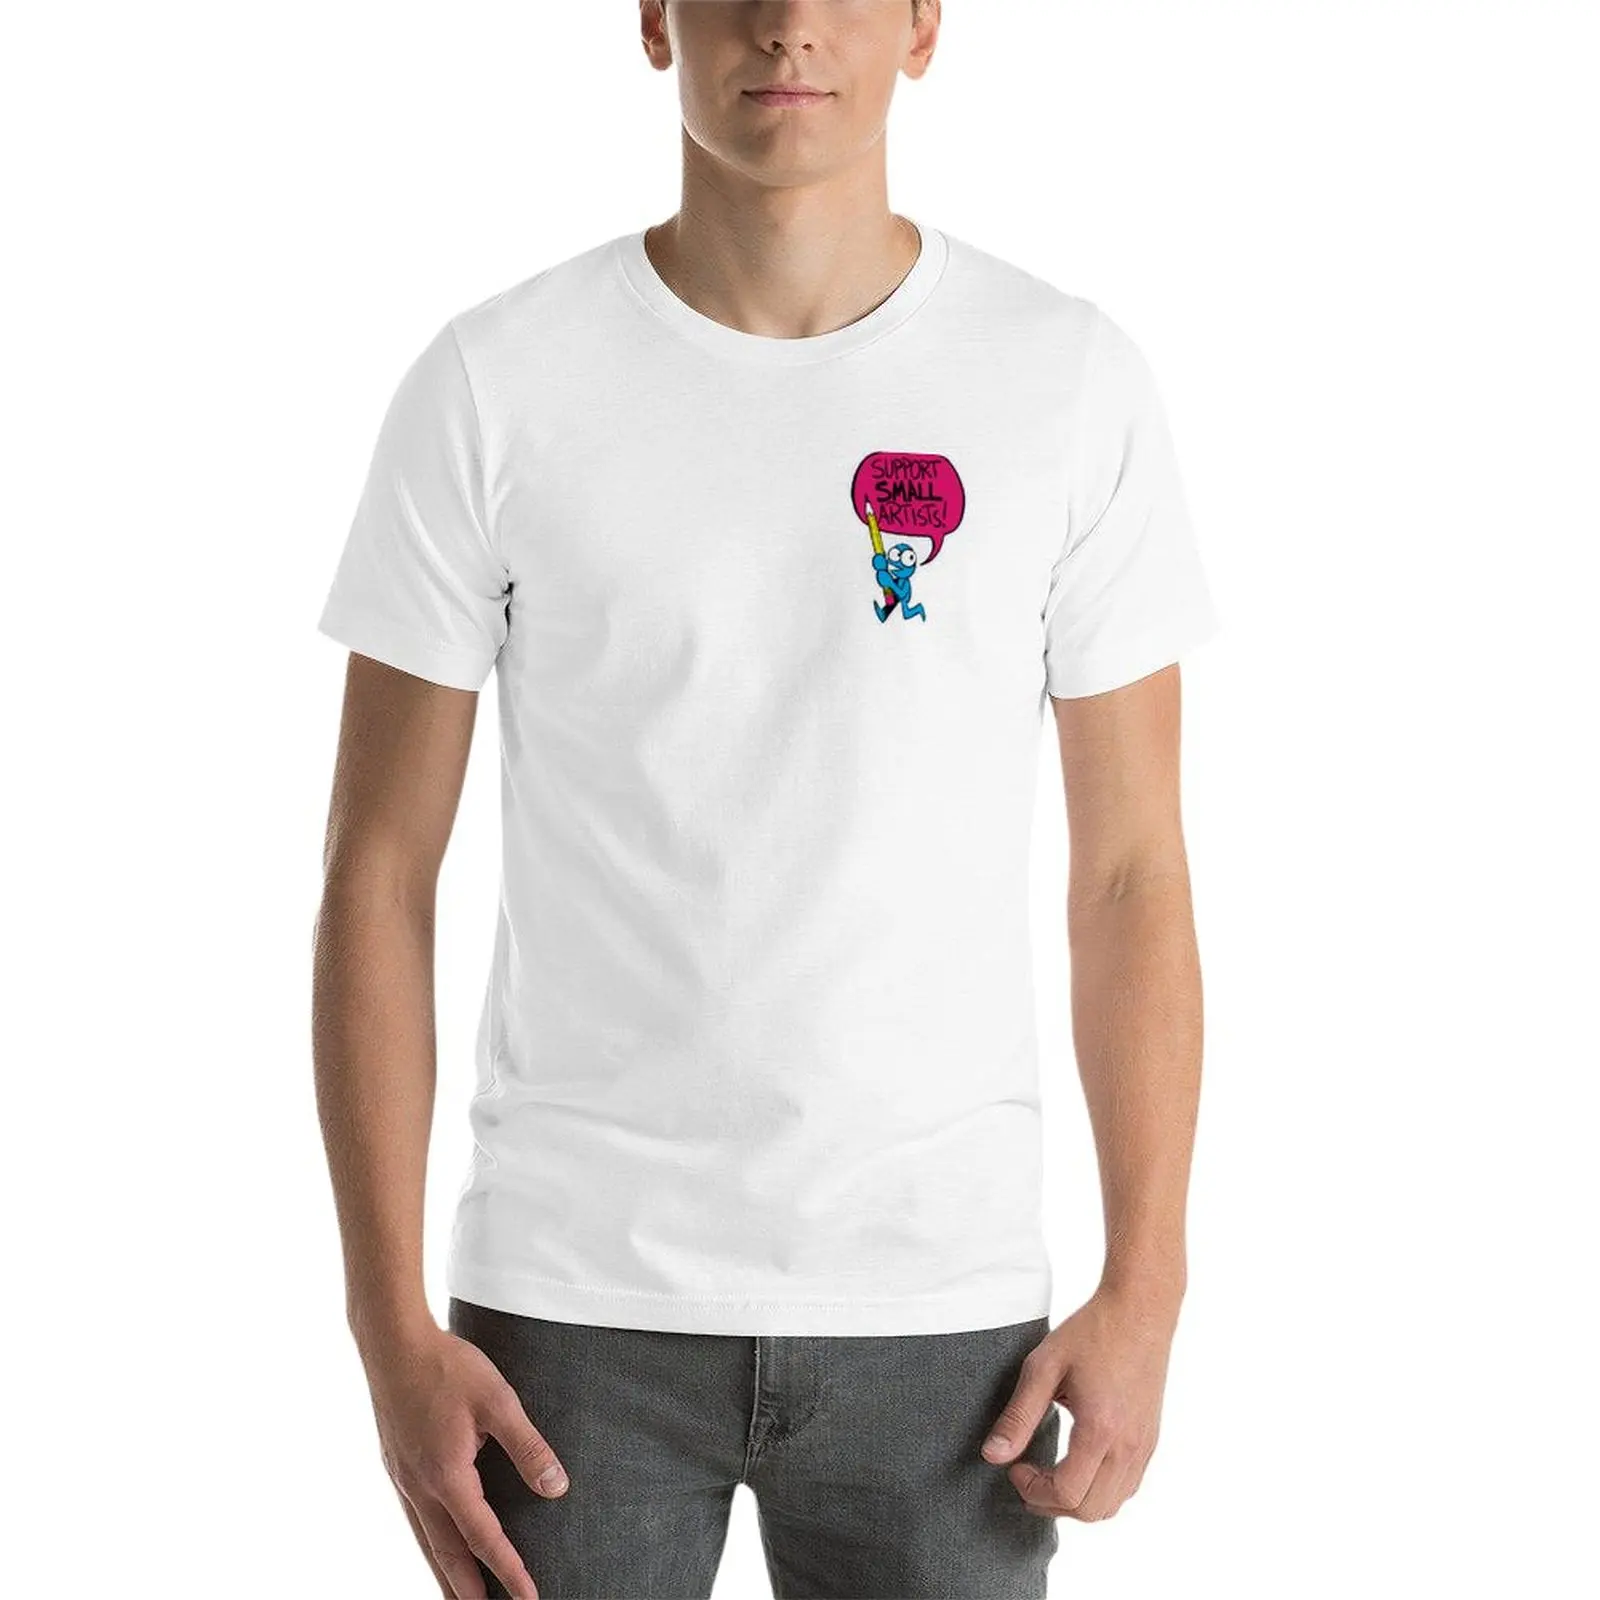 Новая поддержка маленьких художников! (миниатюрная версия) Мужская футболка, мужская одежда большого размера, футболка большого размера Изображение 2